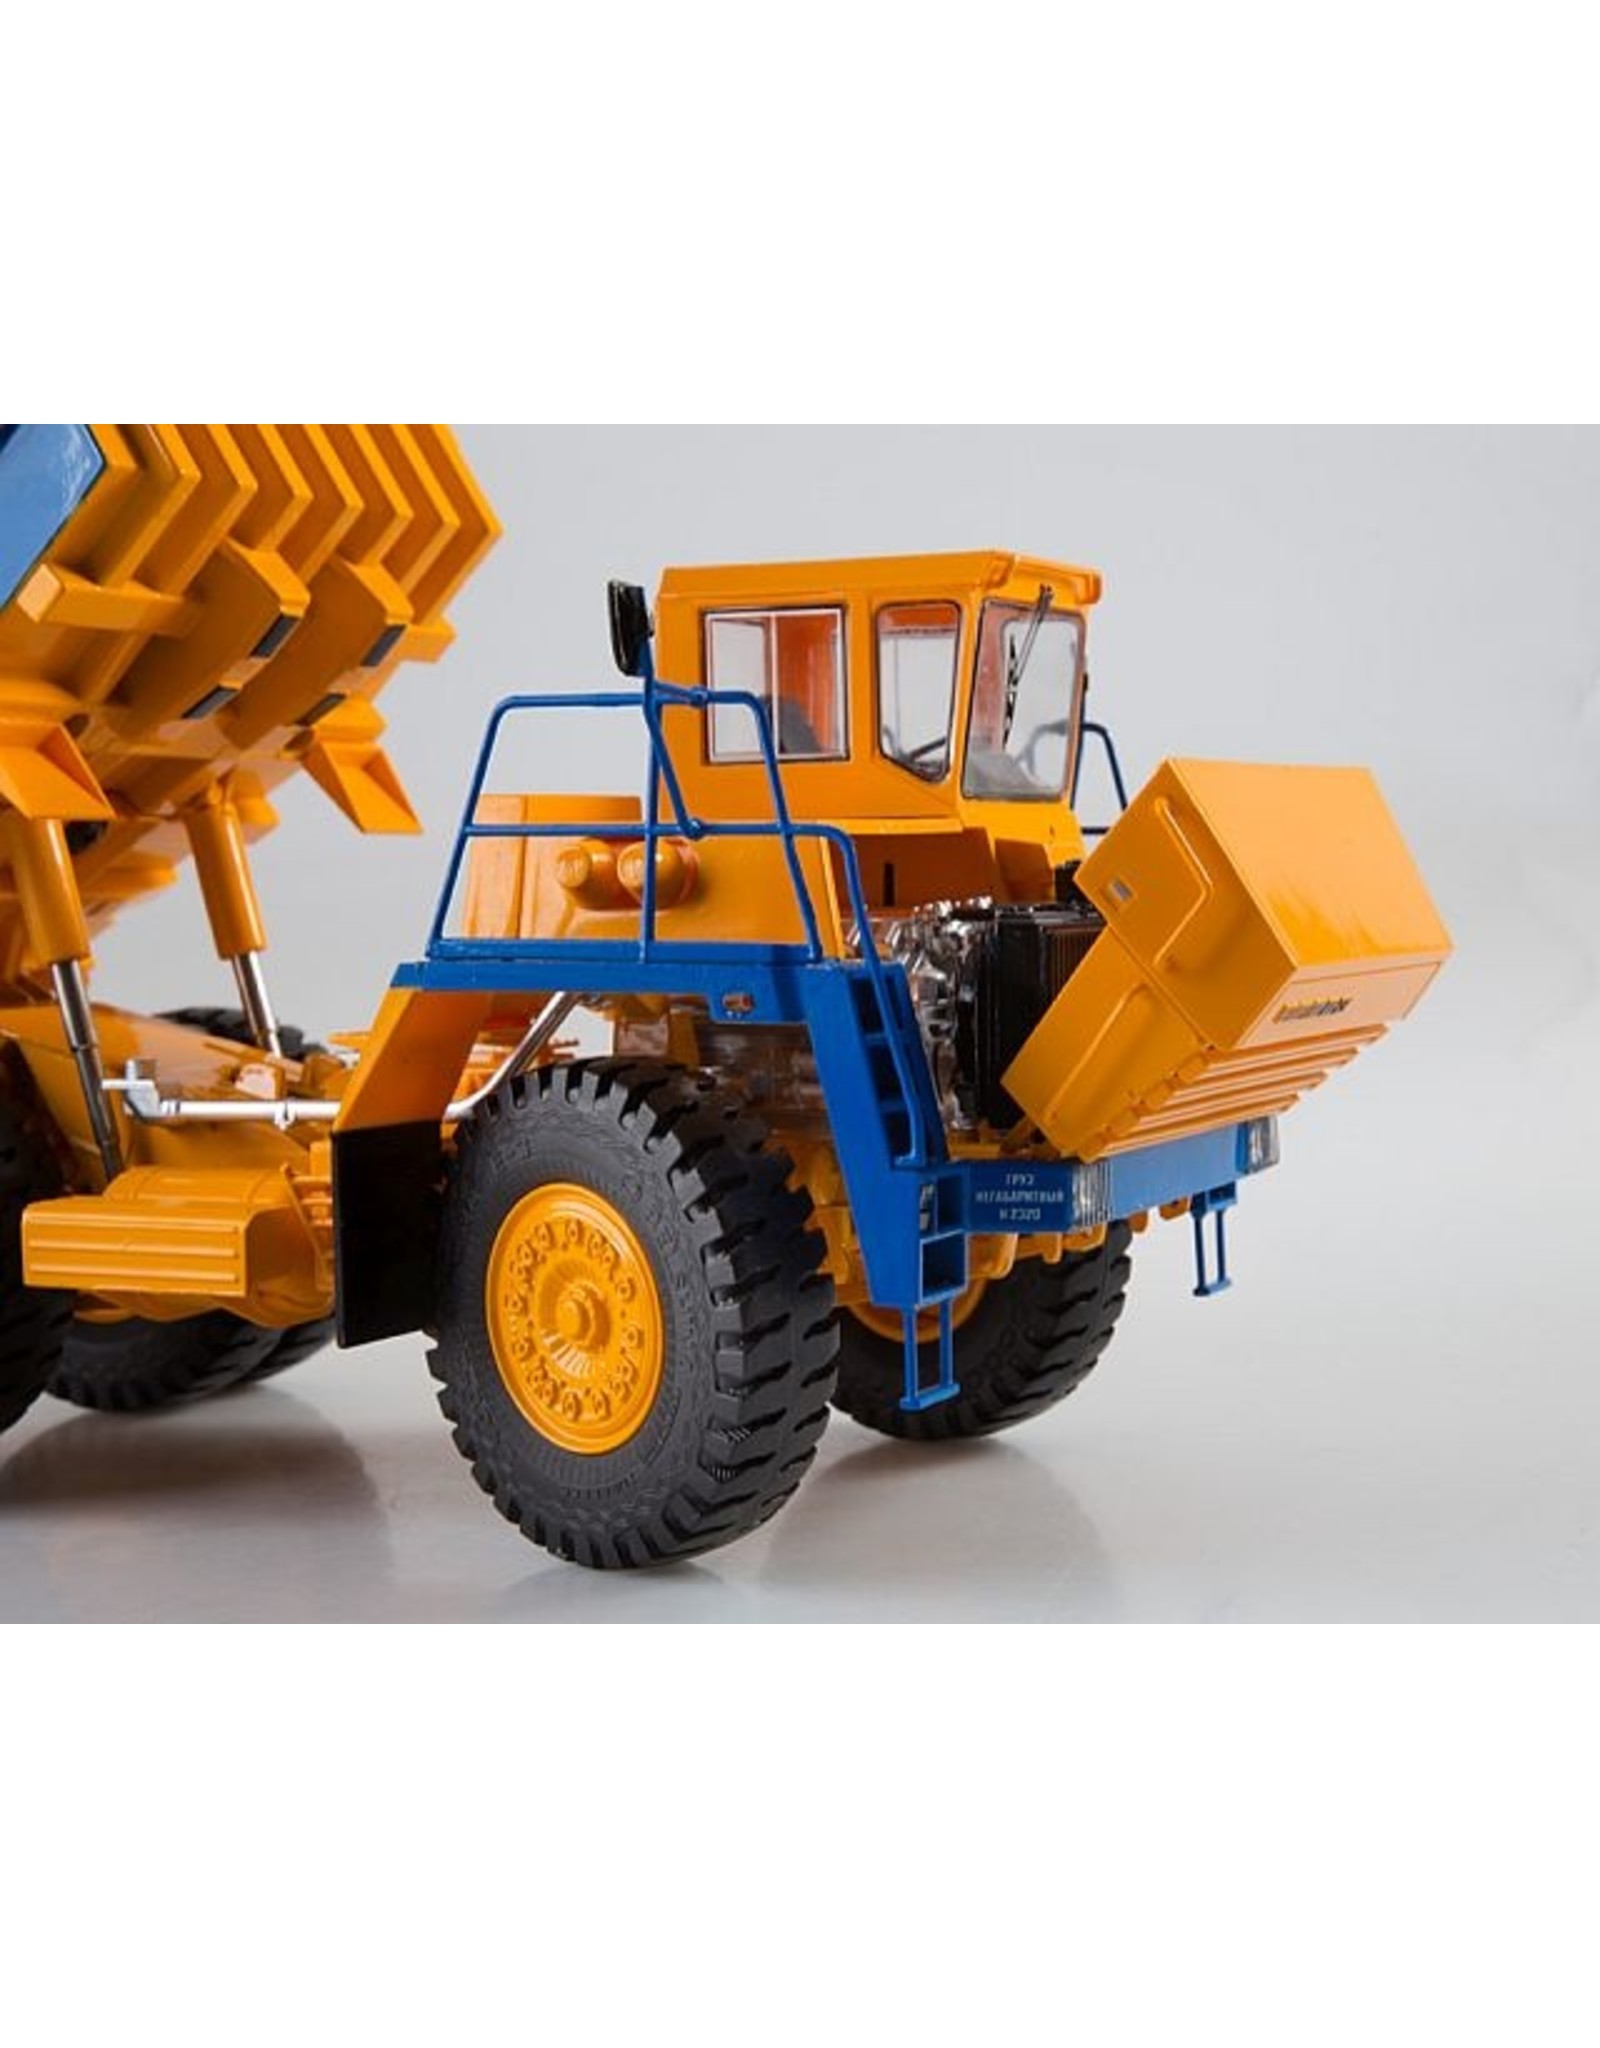 BelAZ BELAZ-7547 quarry dump truck(yellow/blue).